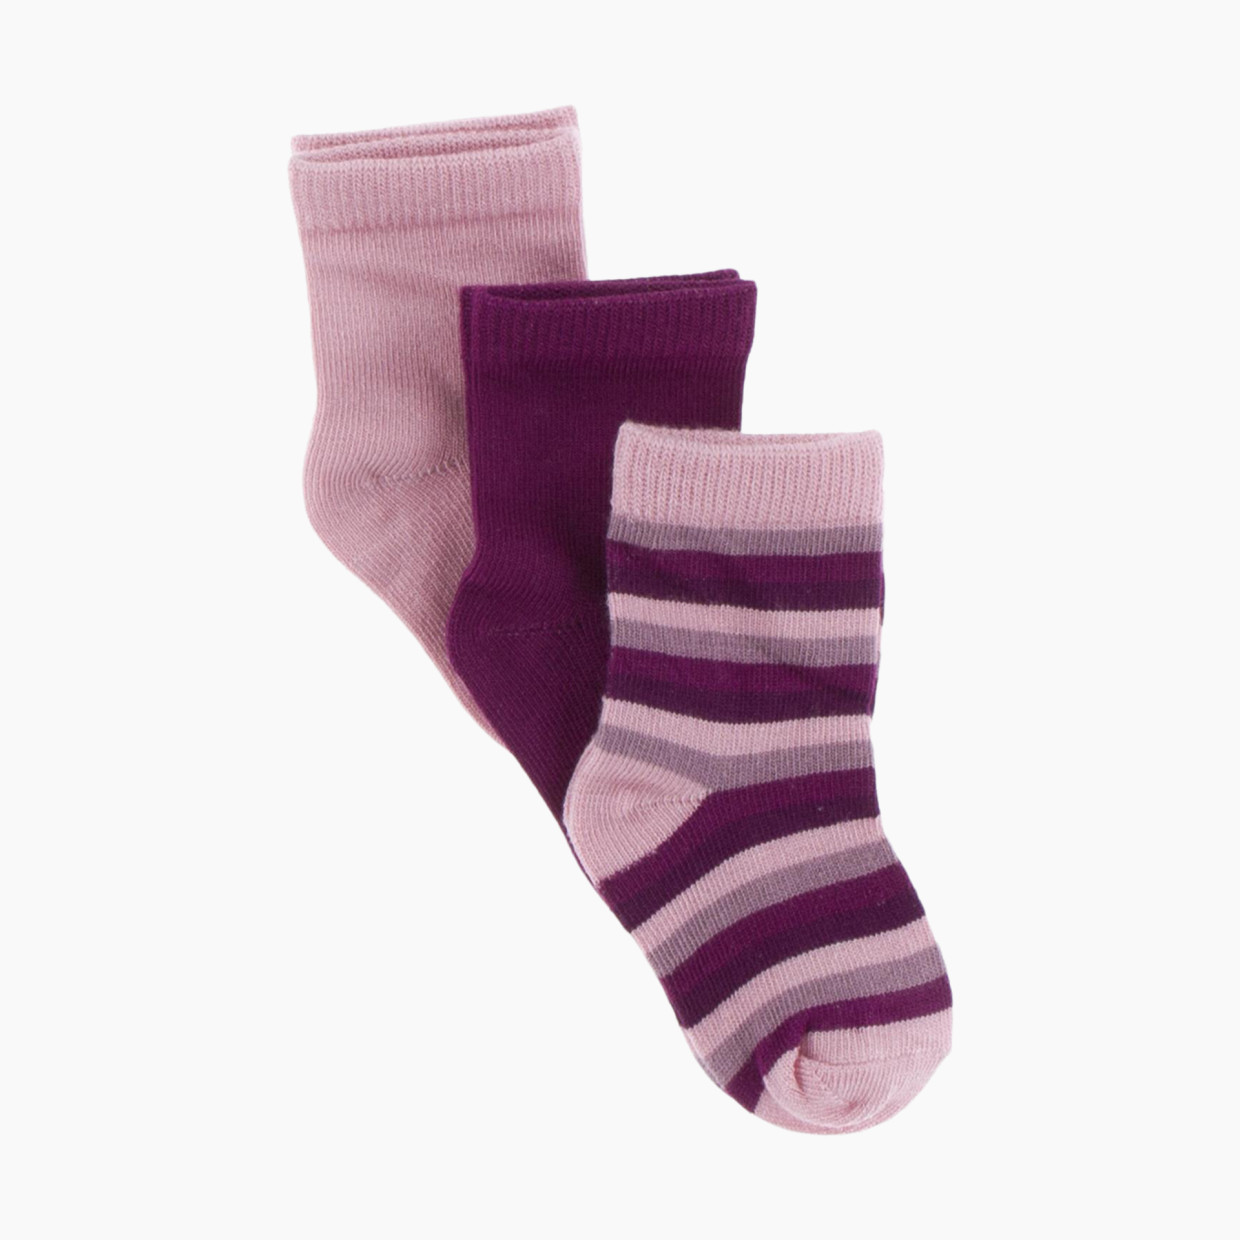 KicKee Pants Crew Socks (3 Pack) - Lotus, Orchid & Coral Stripe, 6-12 Months.